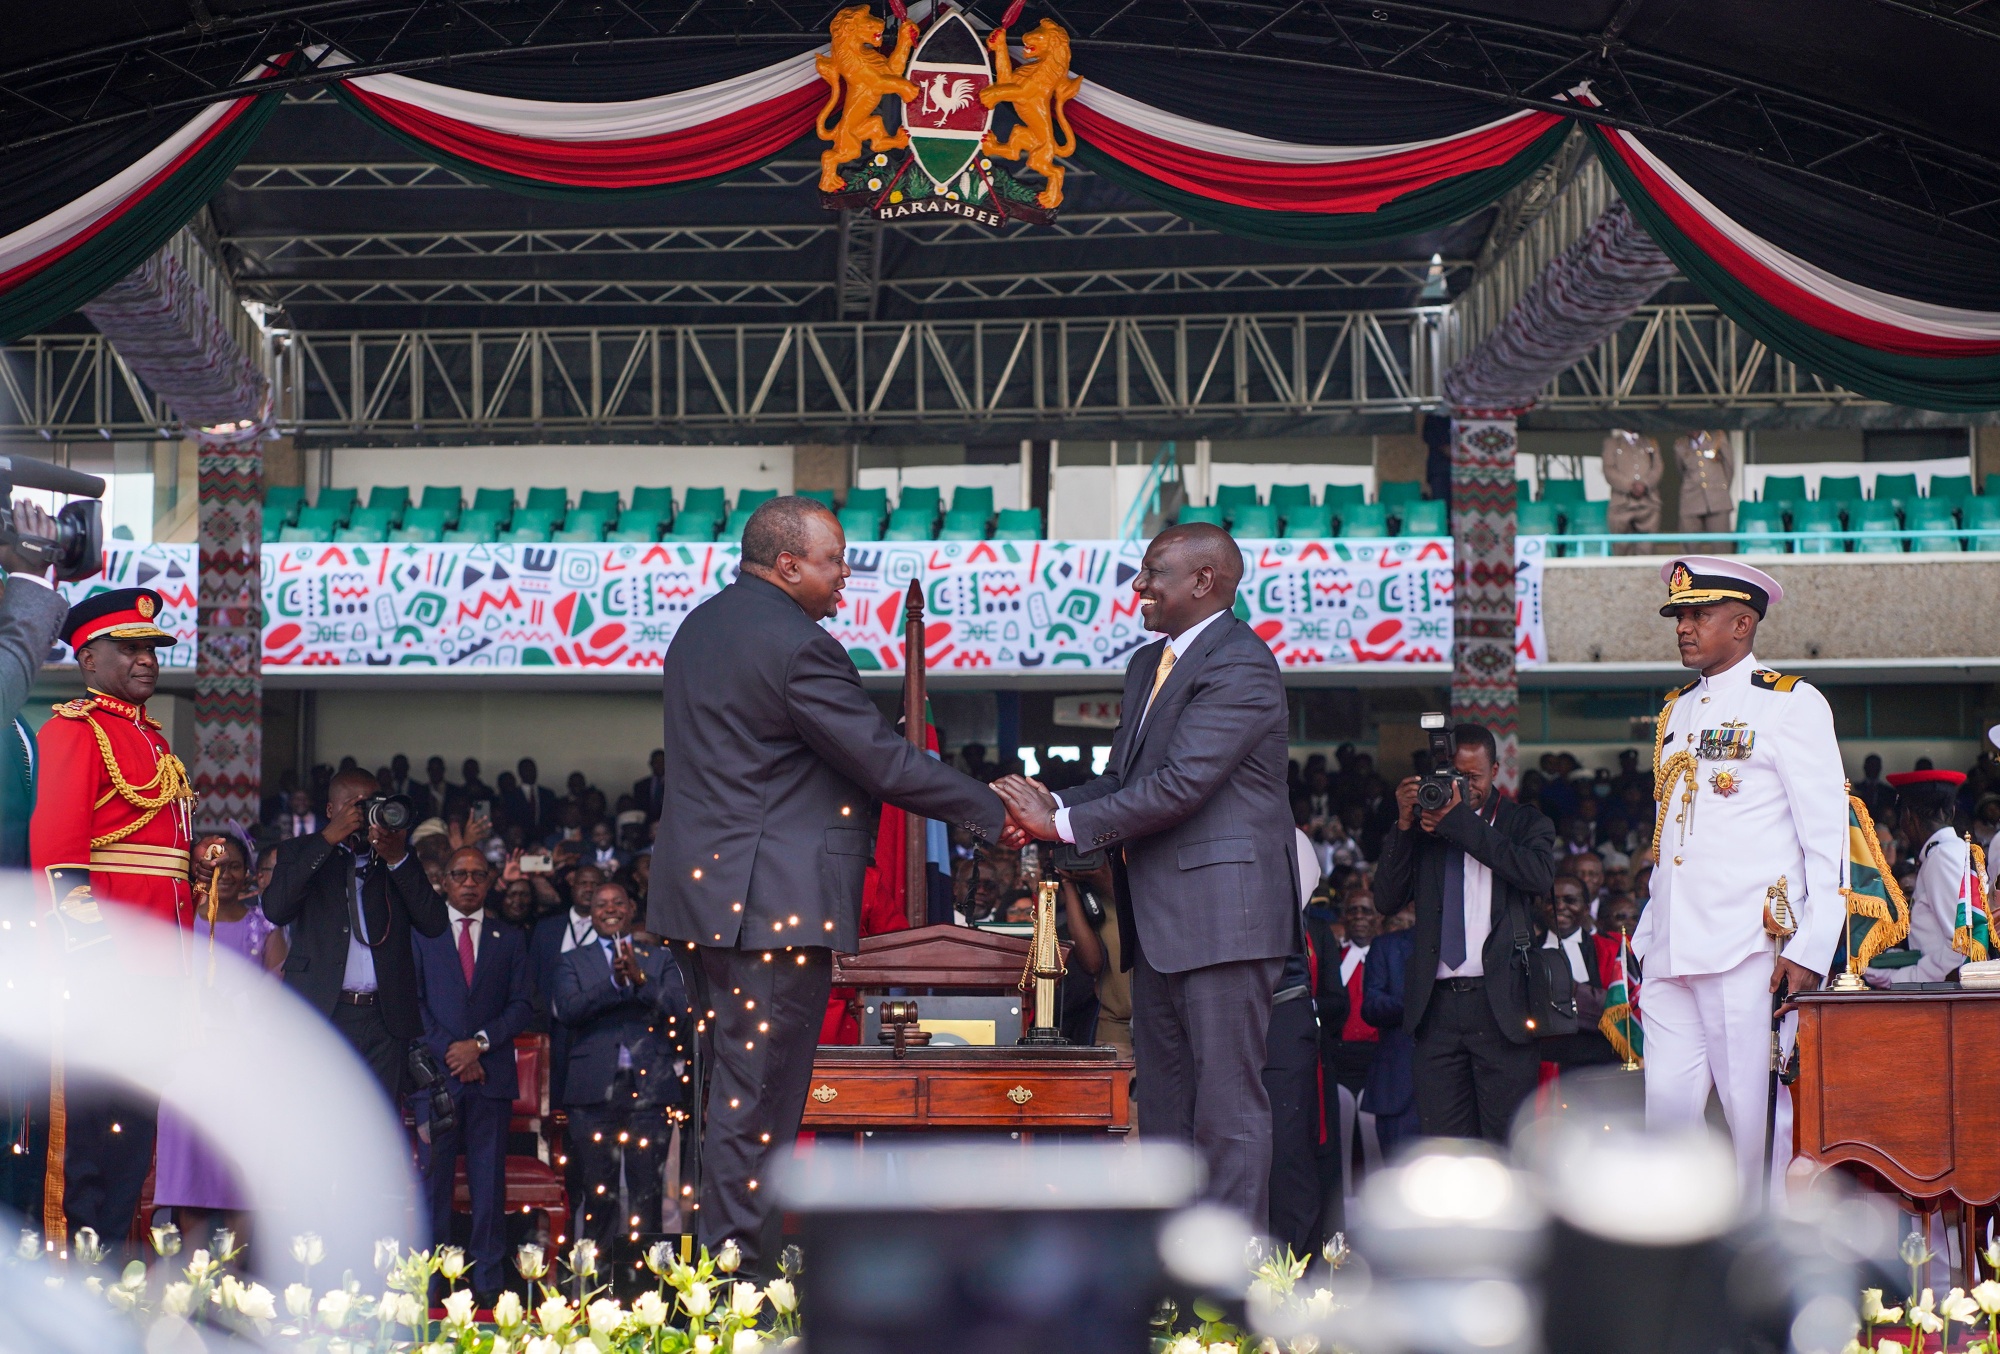 President William Ruto, right, shakes hands with Uhuru Kenyatta during his inauguration ceremony in Nairobi, Kenya, on Sept. 13.